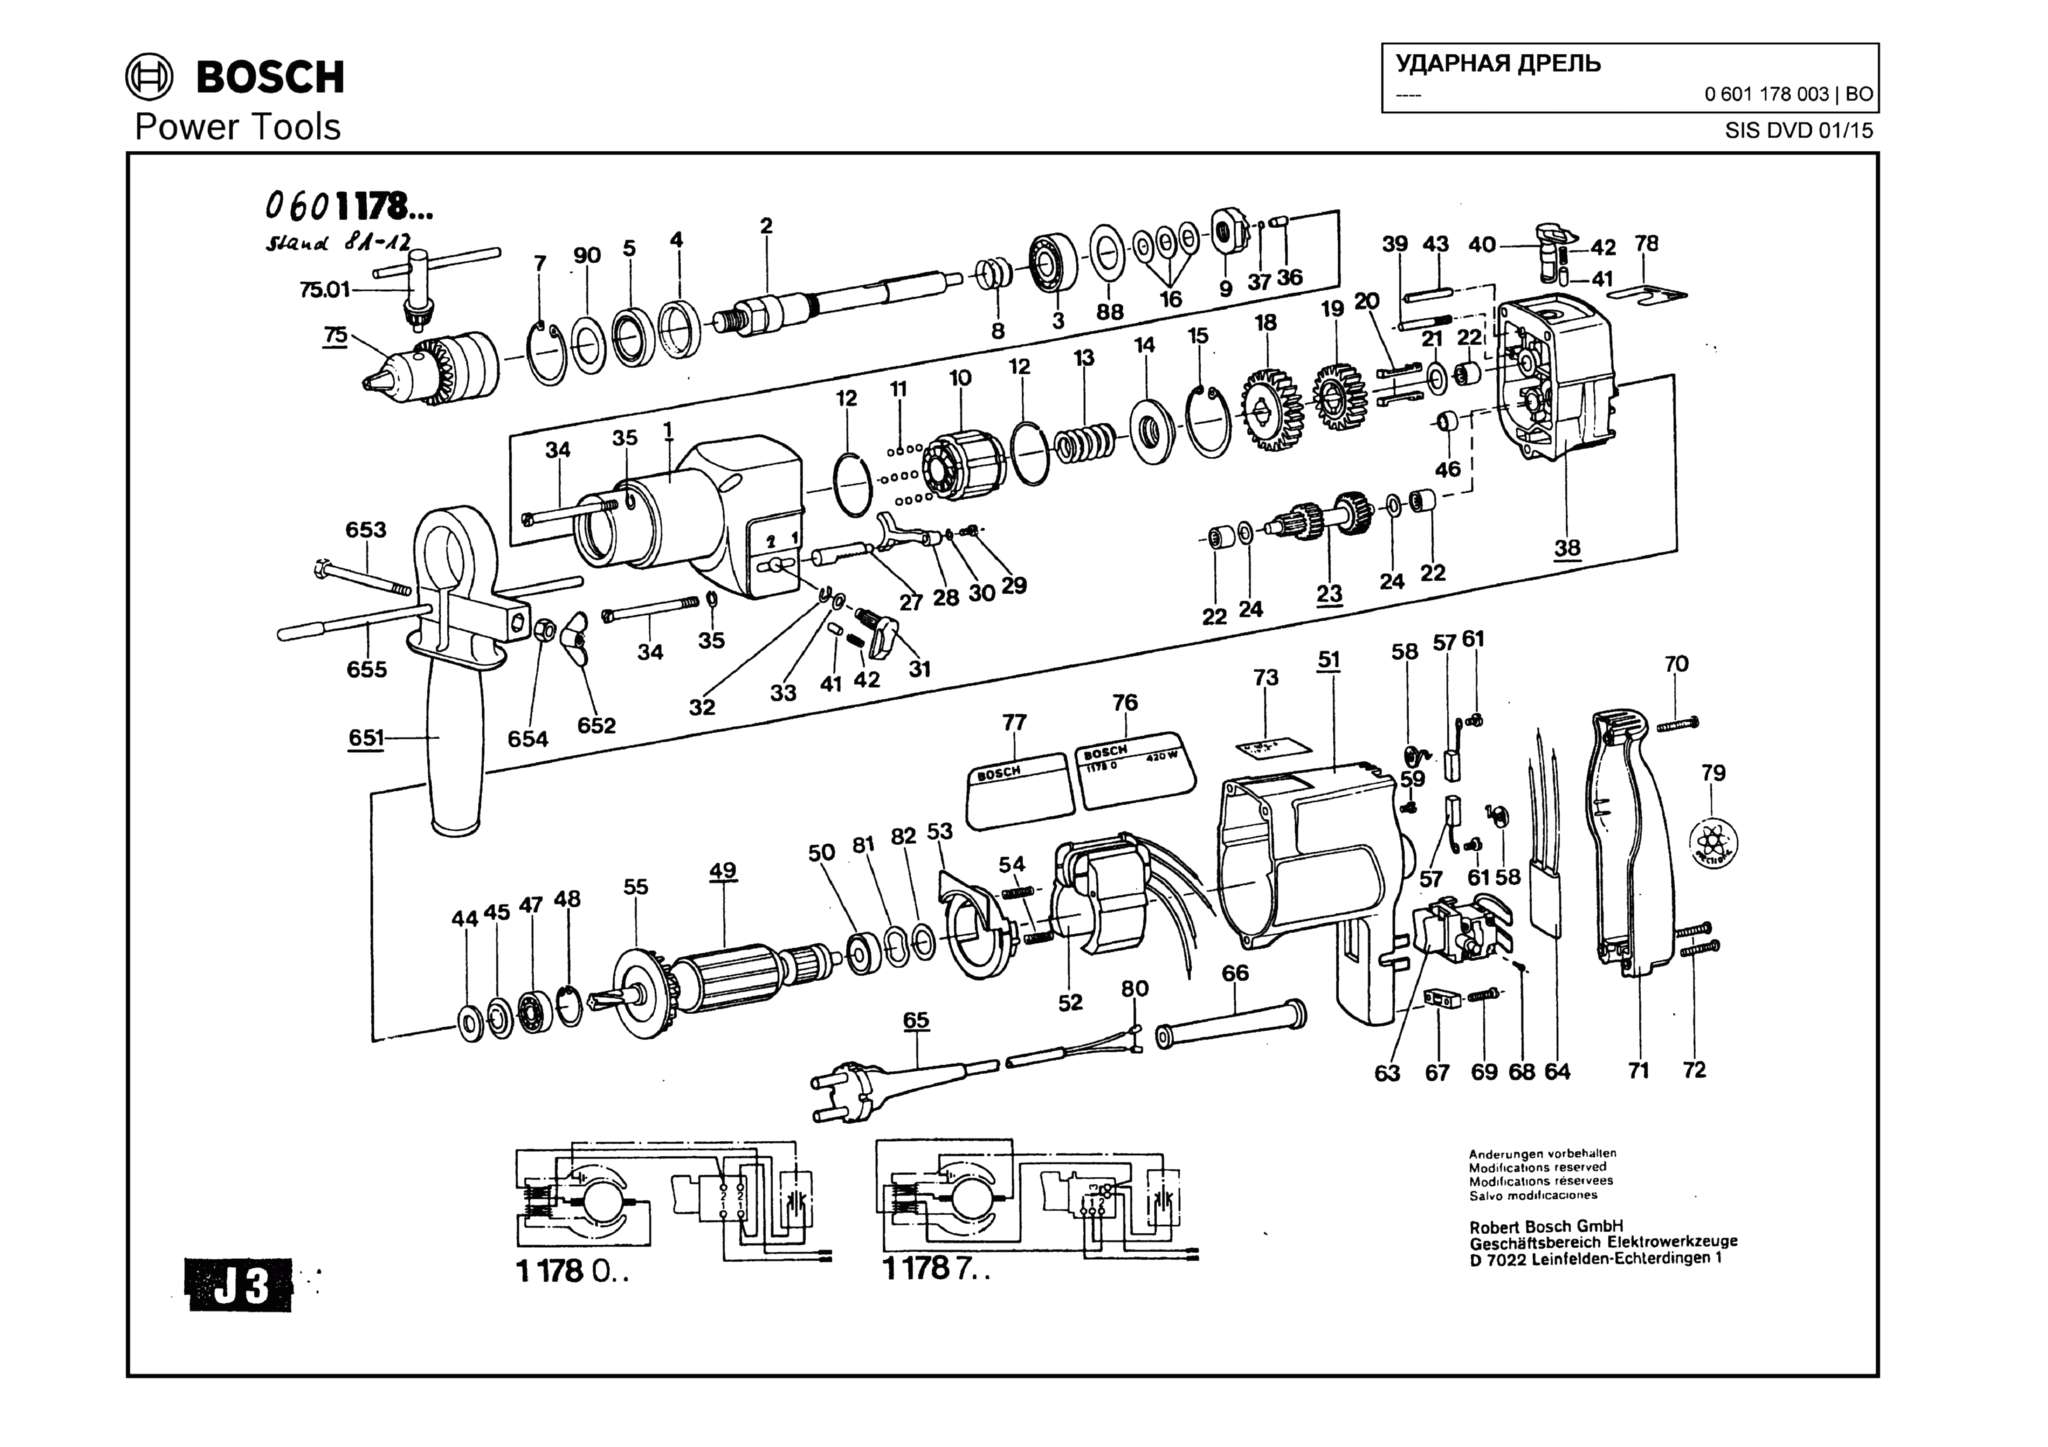 Запчасти, схема и деталировка Bosch (ТИП 0601178003)